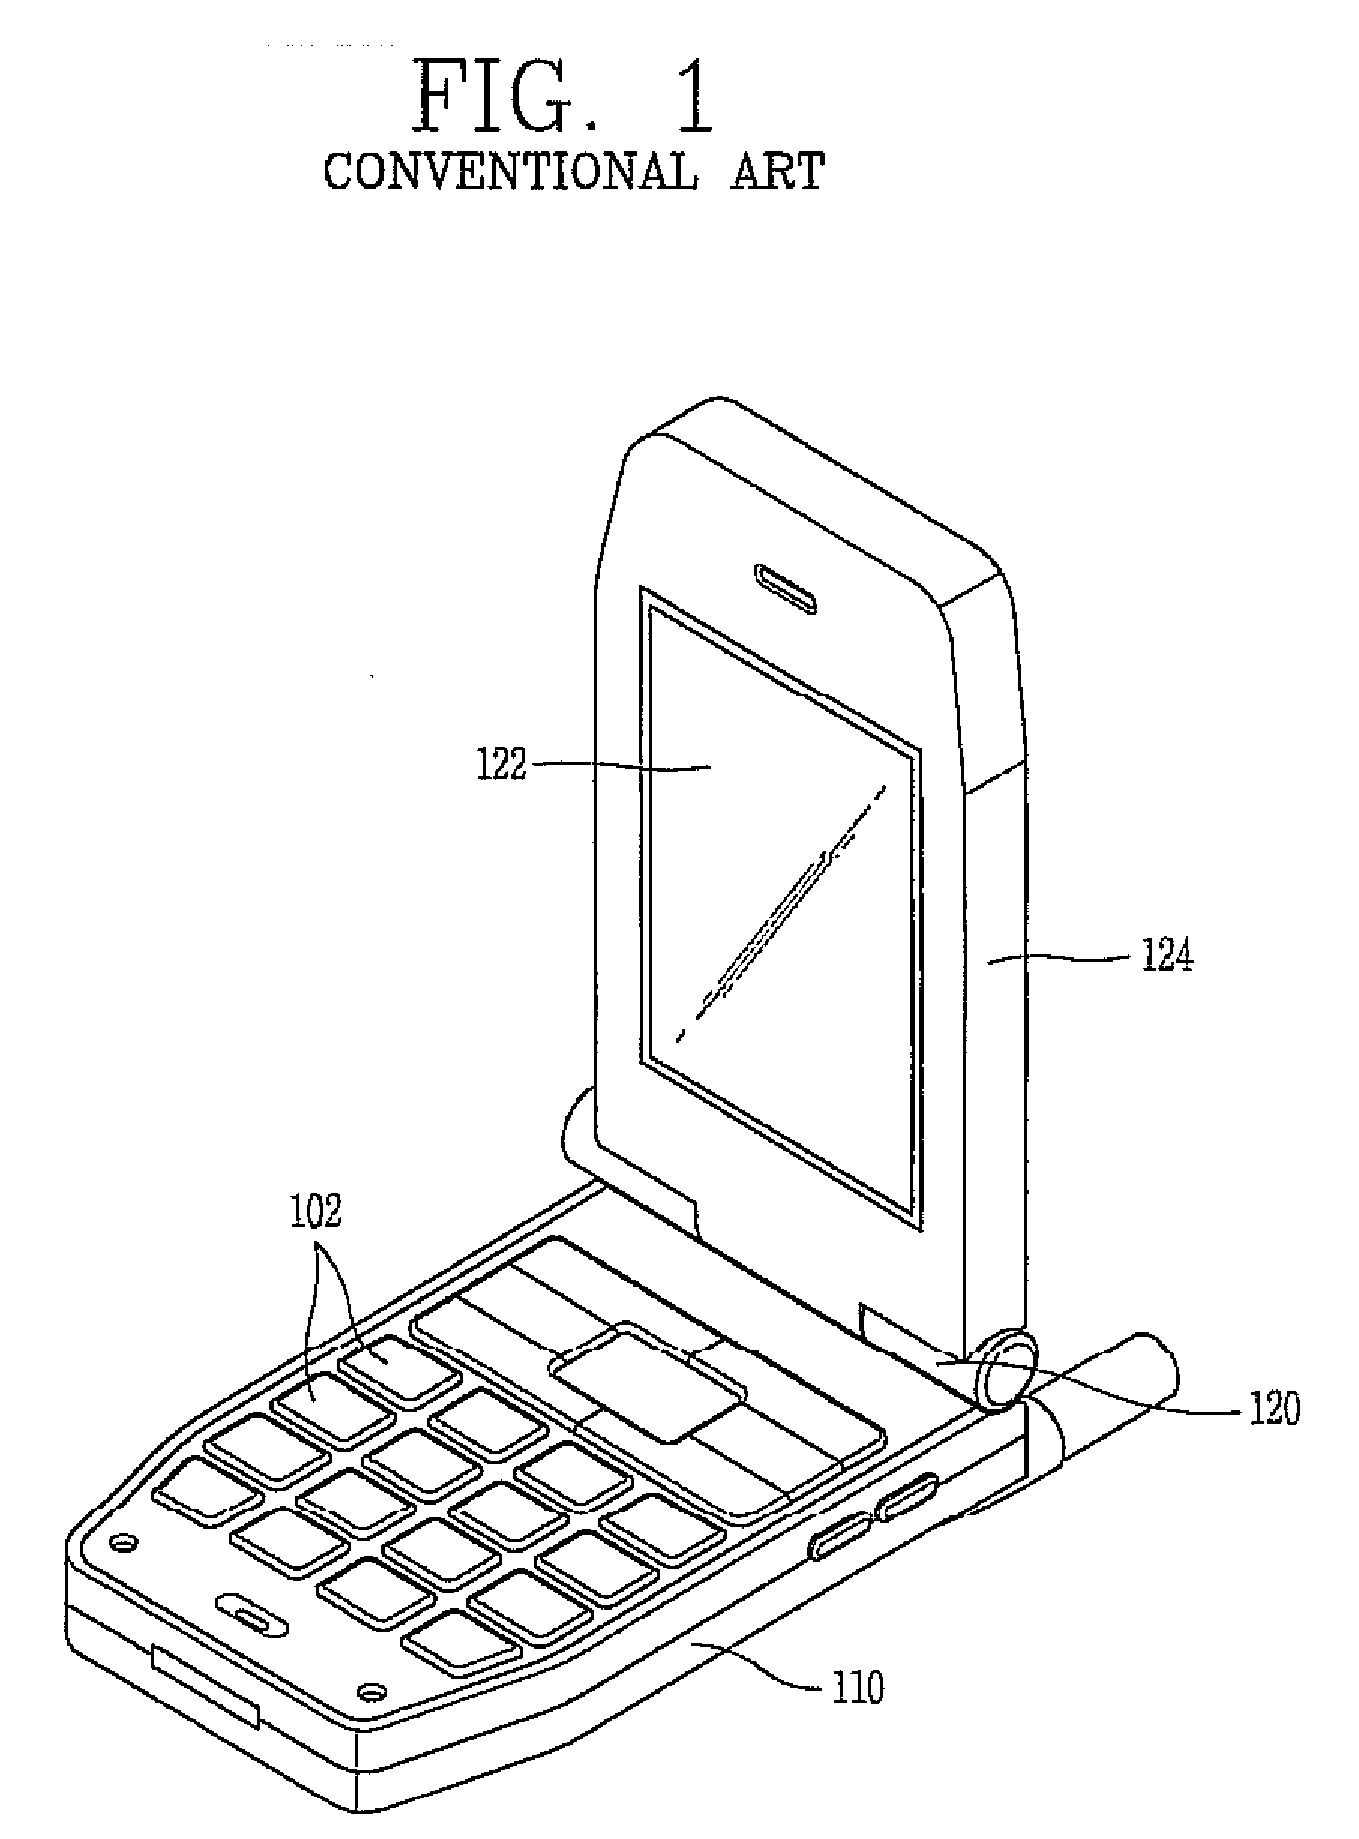 Portable terminal having antenna apparatus